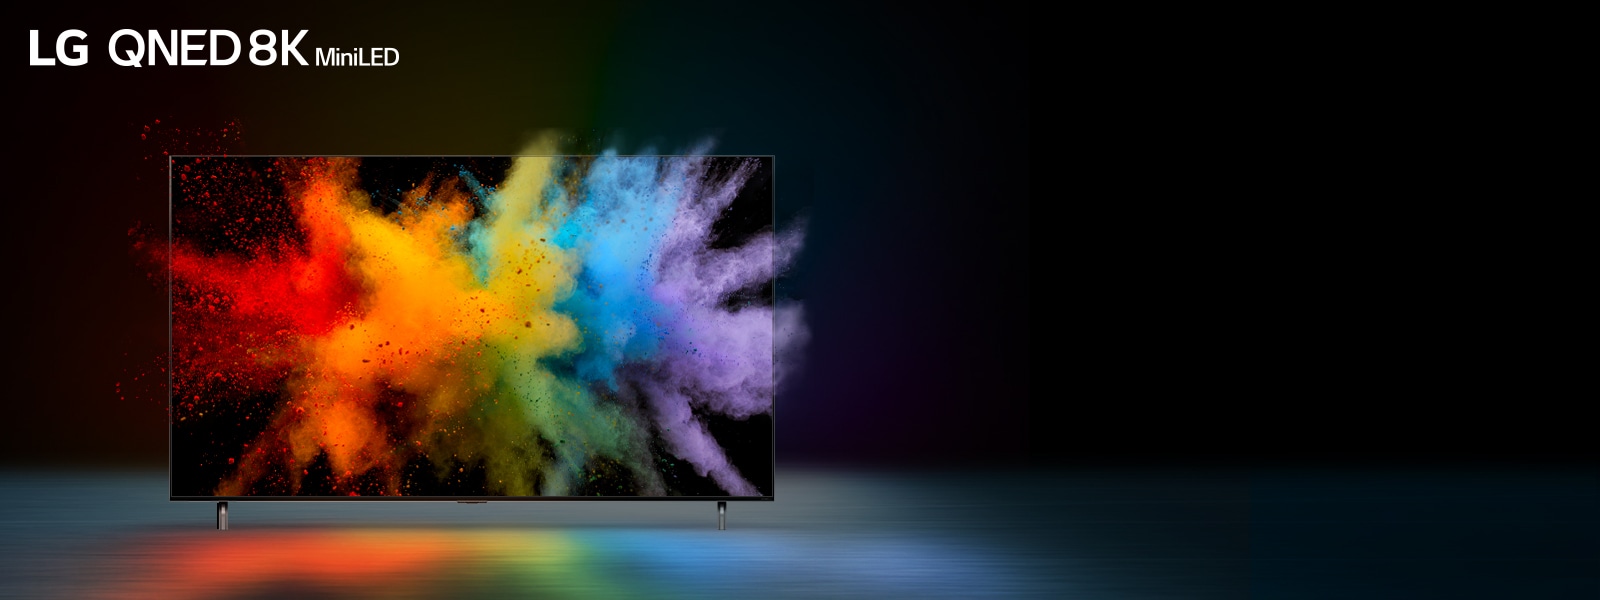 Le téléviseur est posé dans un endroit sombre. La poudre de couleur explose à l’intérieur de l’écran de télévision. 